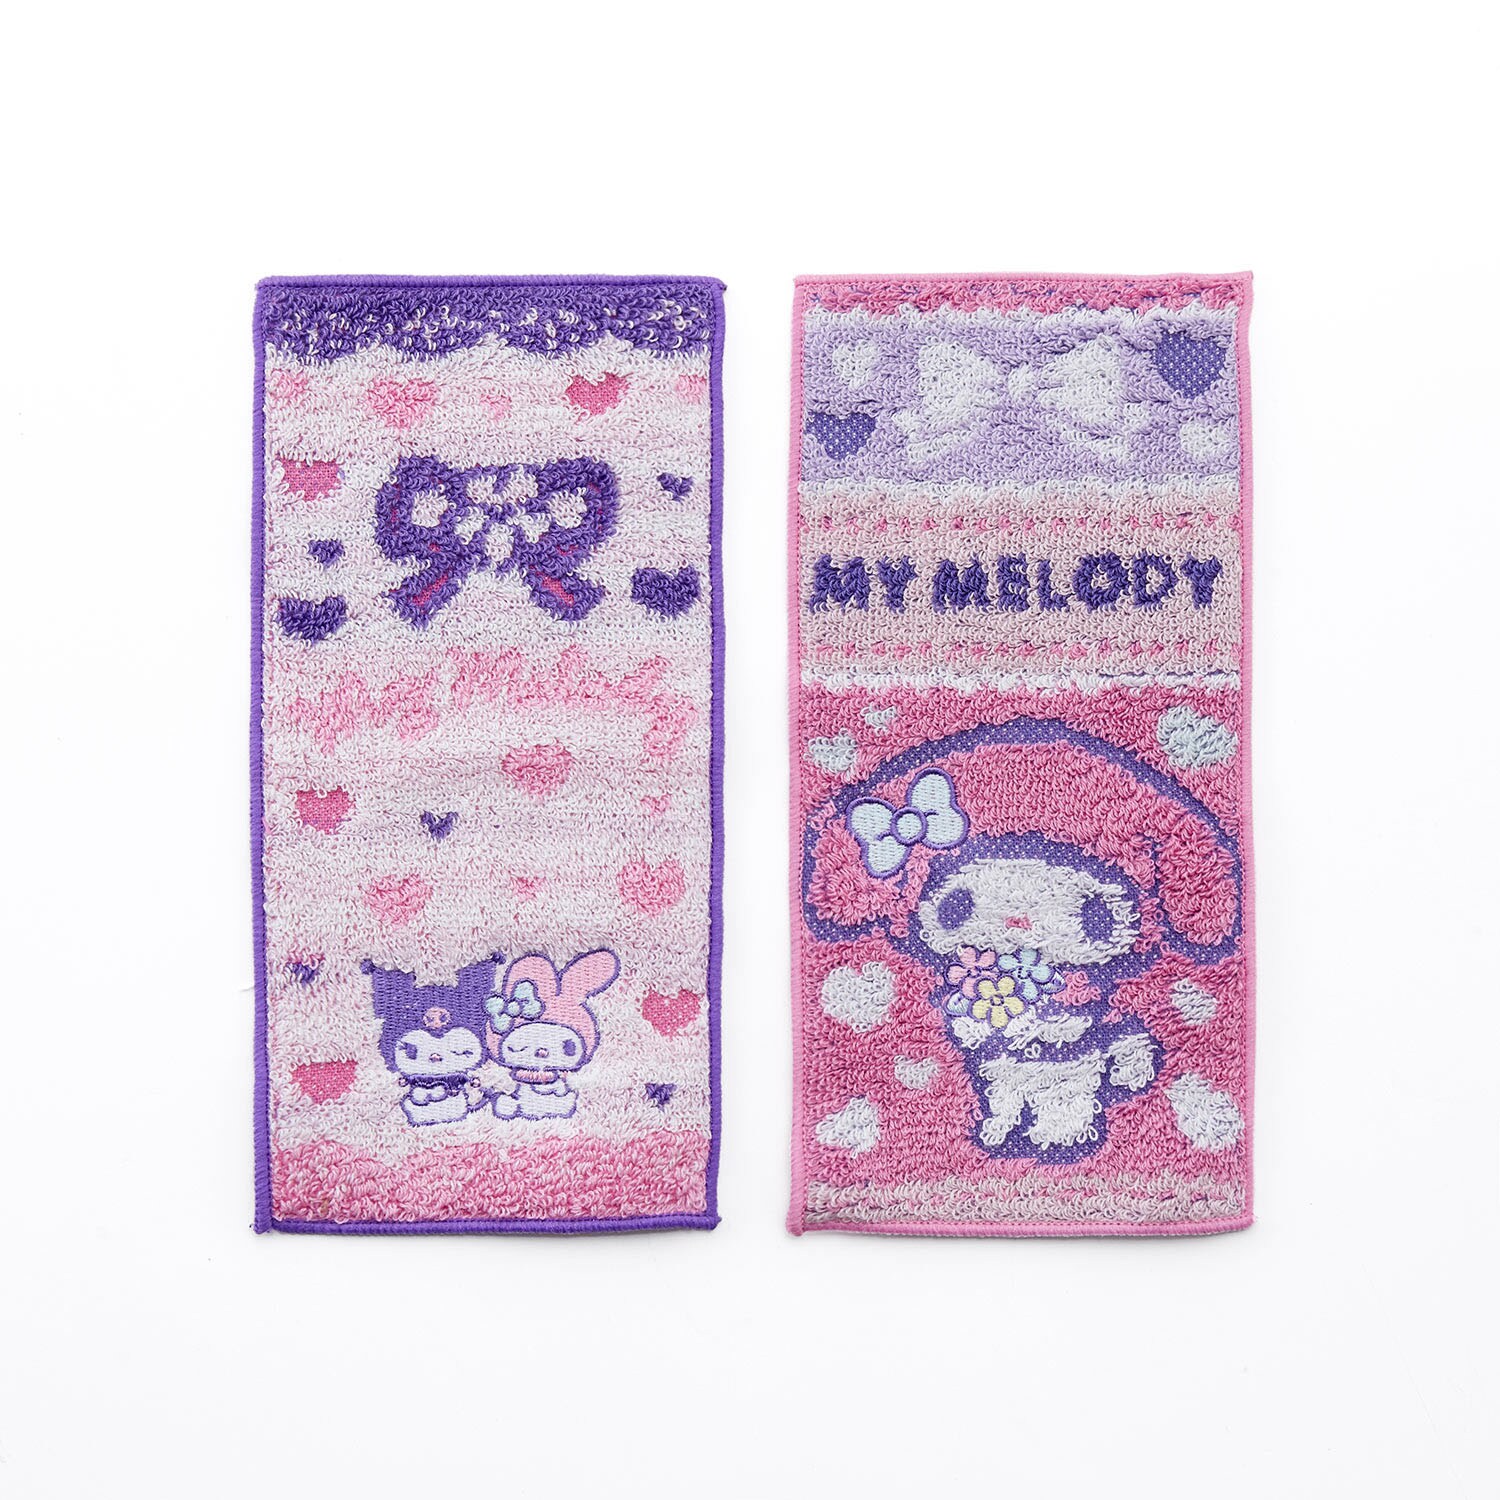 【サンリオ/Sanrio】抗菌防臭加工付きポケットタオル2枚セット「サンリオキャラクターズ」